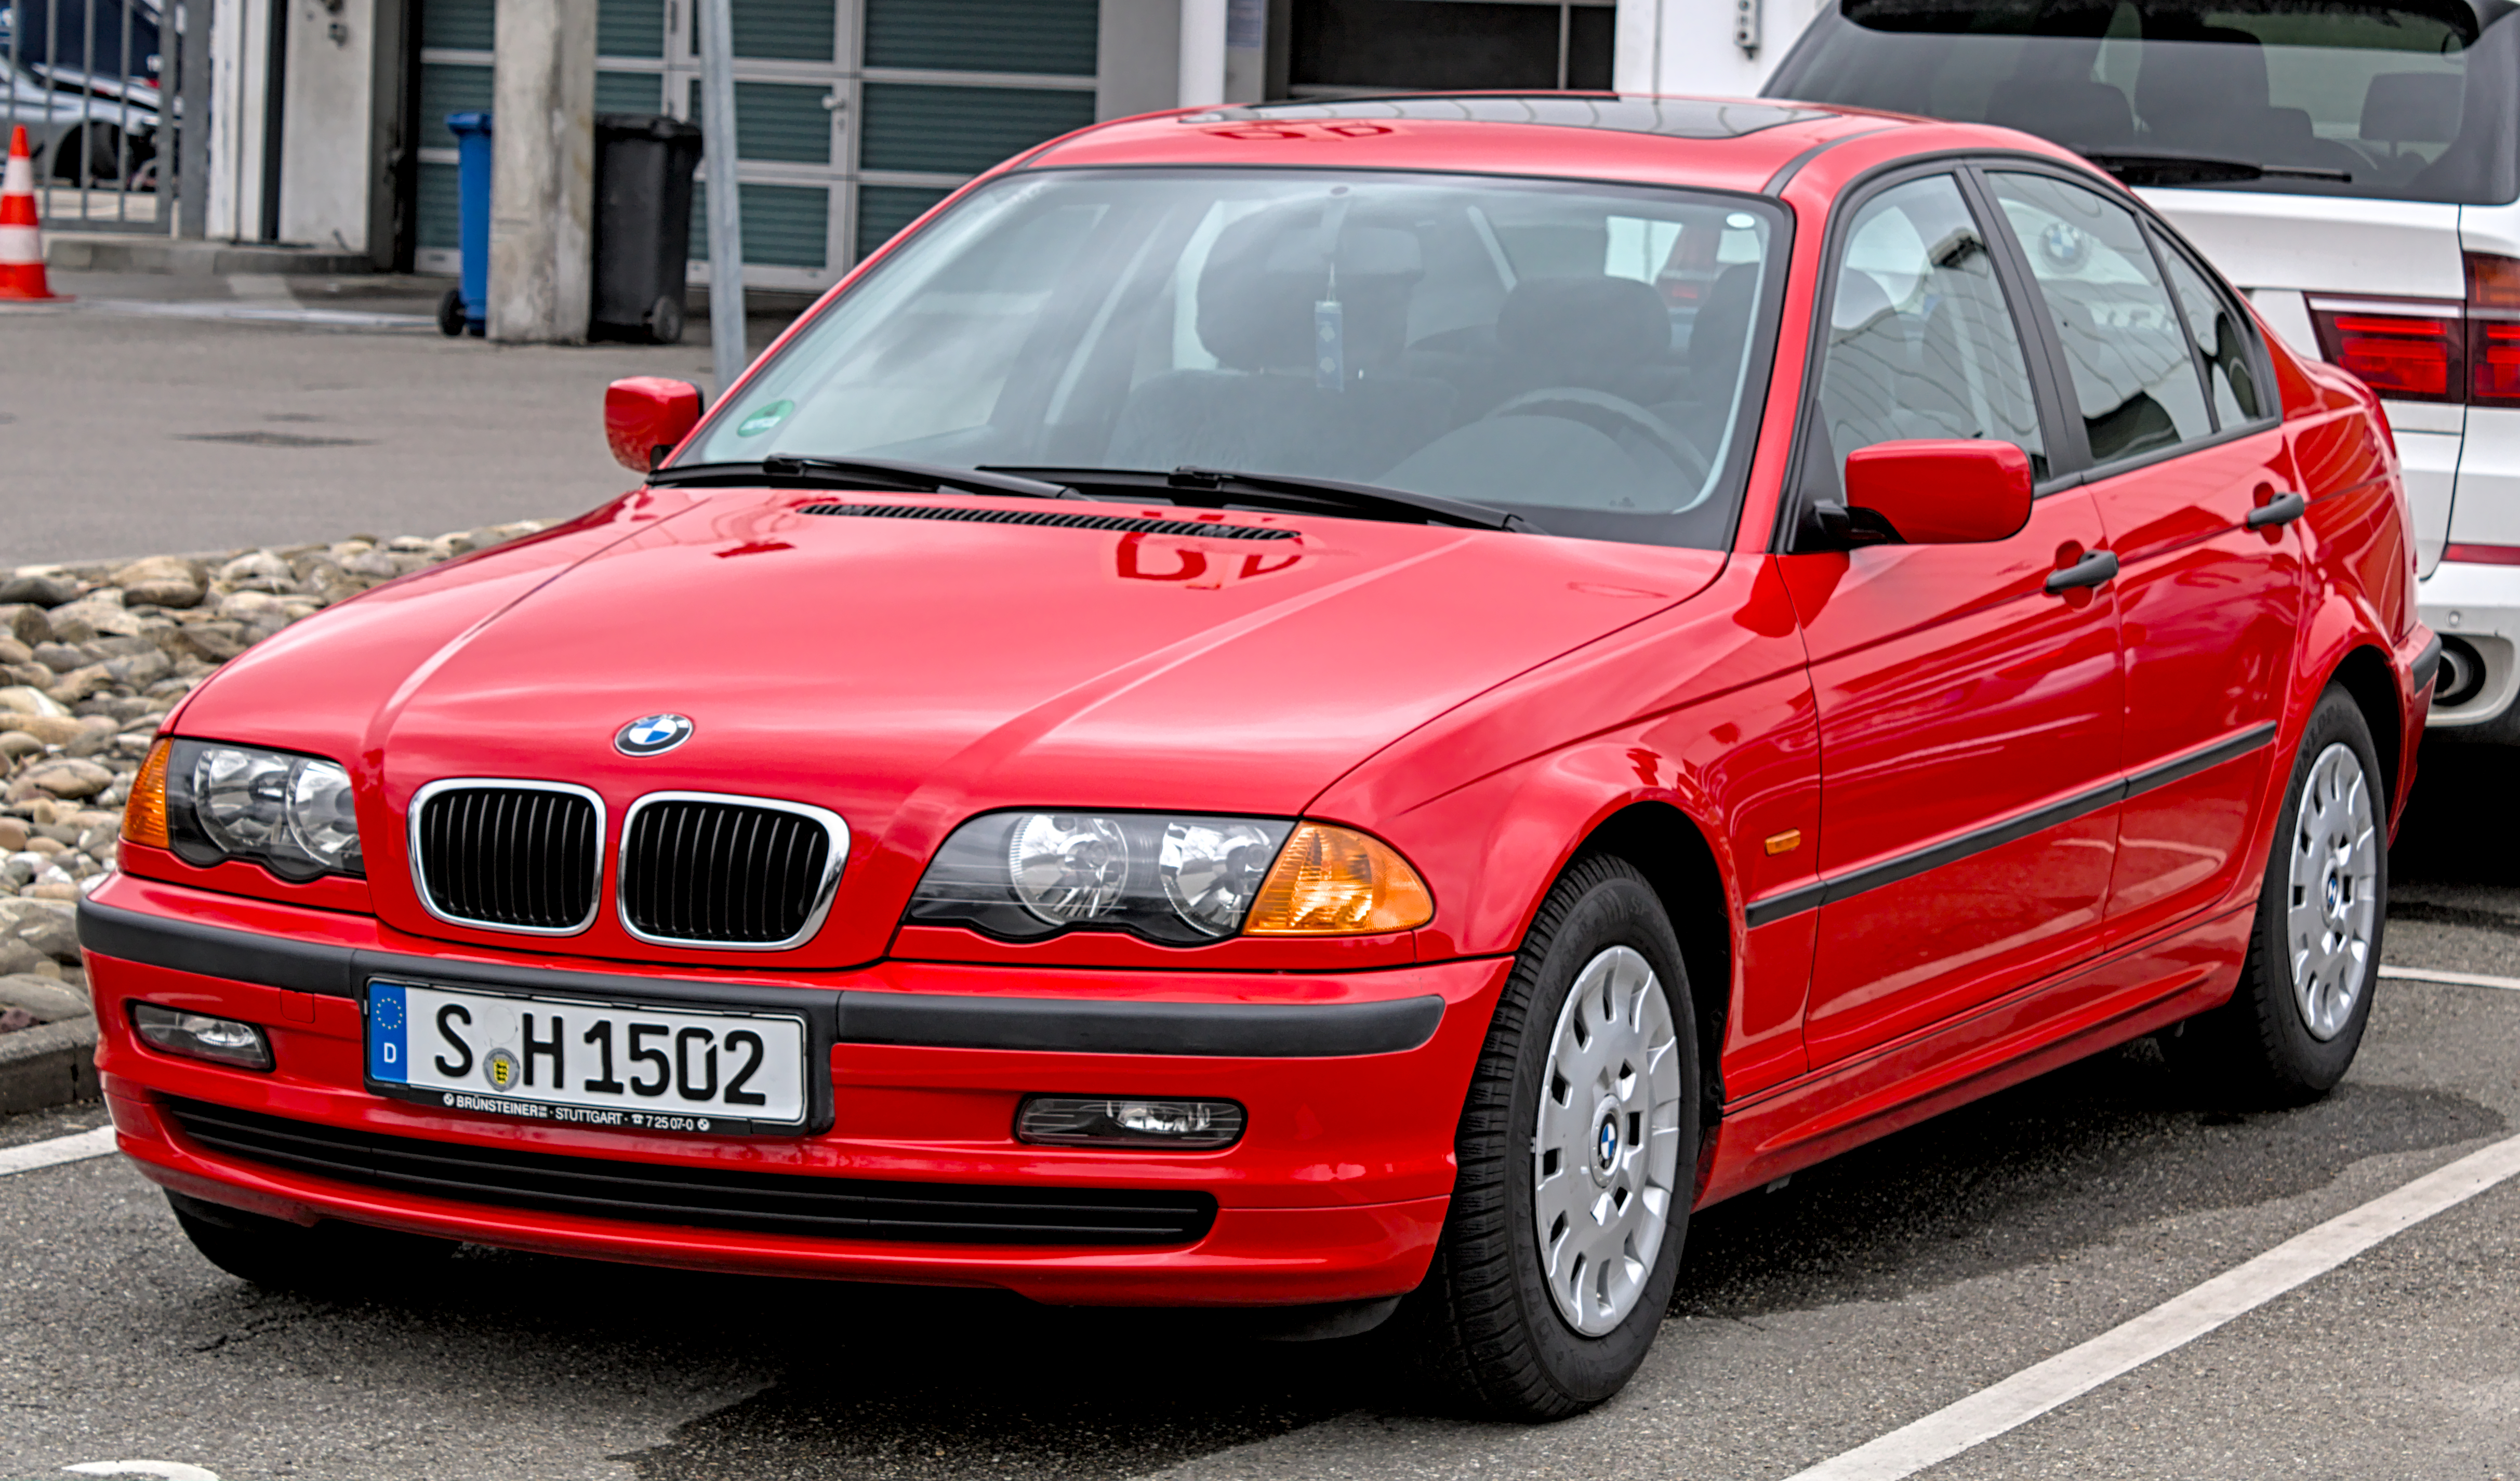 BMW E46 – Wikipedia